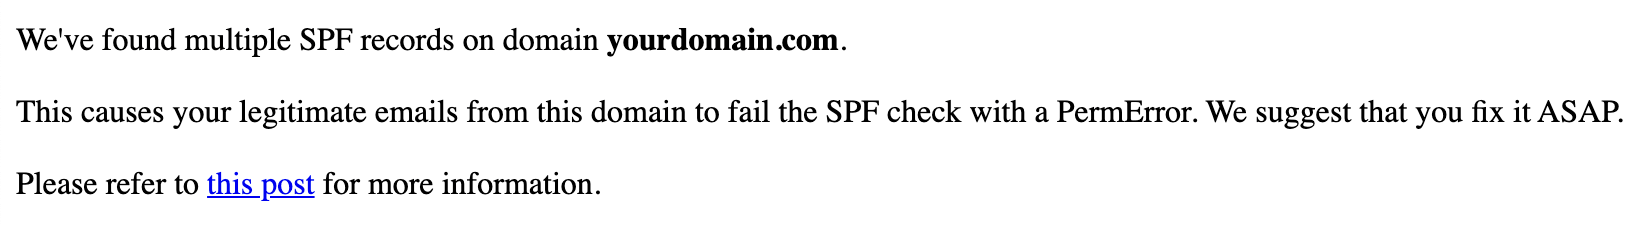 Múltiples registros SPF en advertencia de dominio